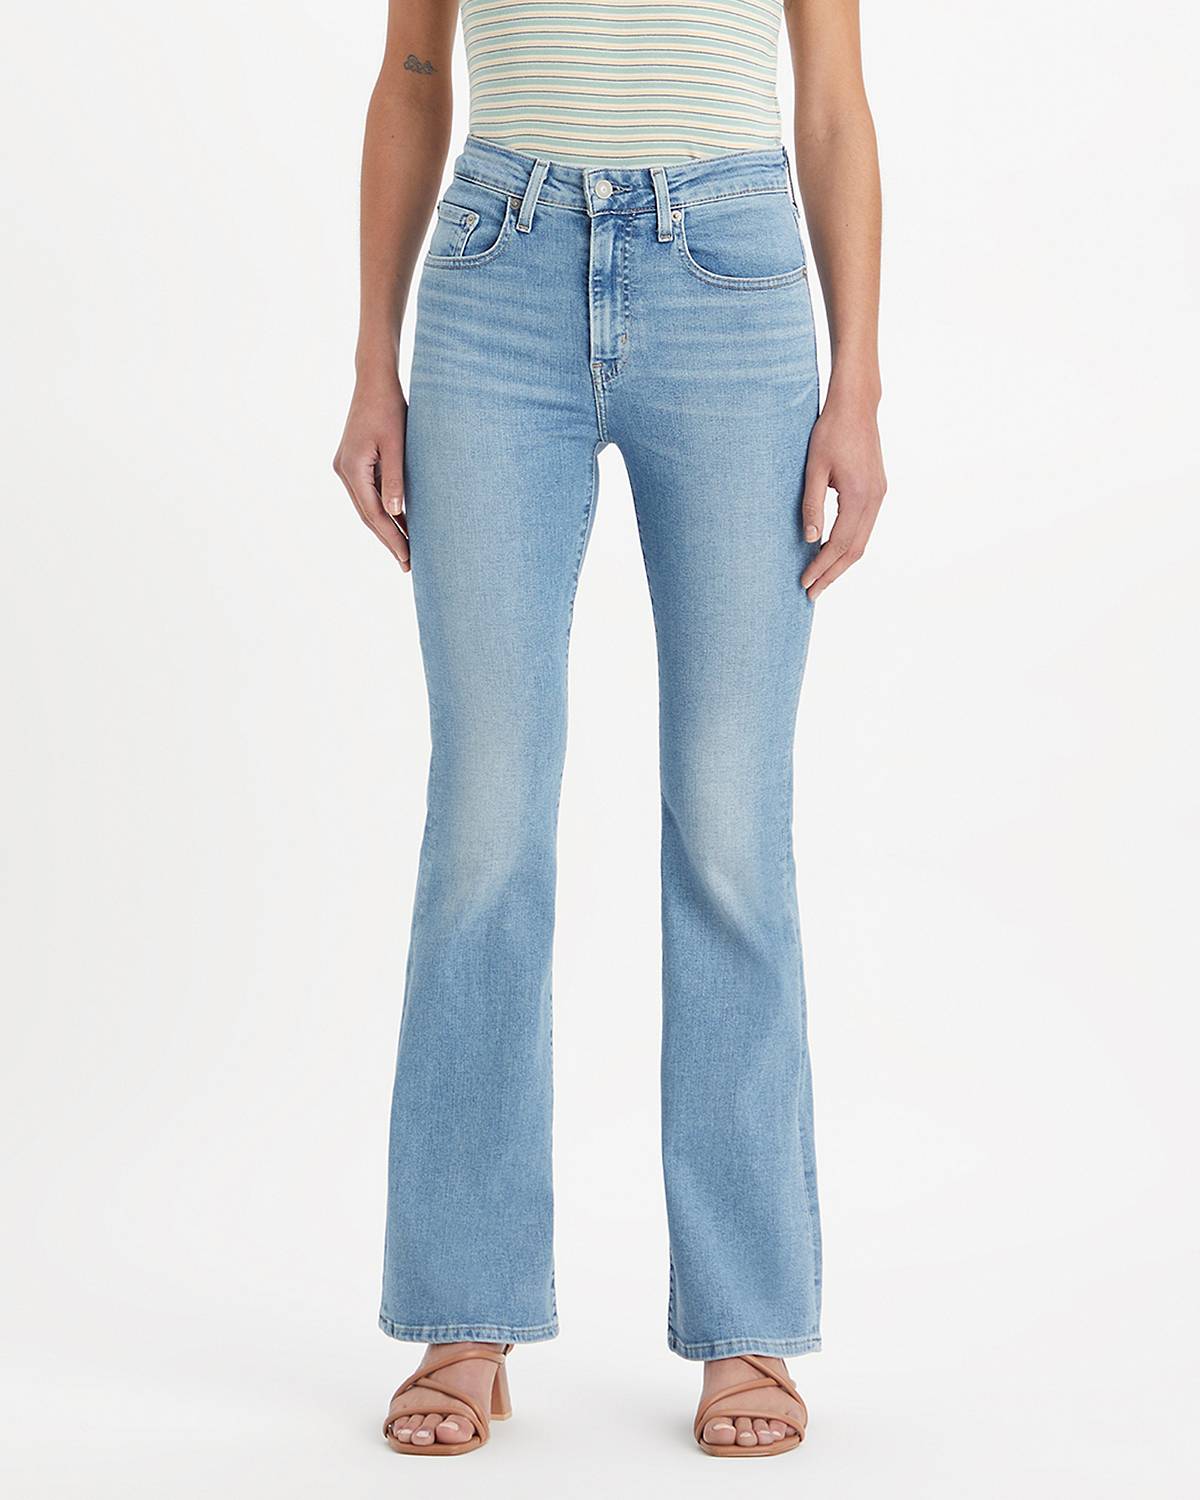 Women's Jeans: Shop Best Jeans for Women